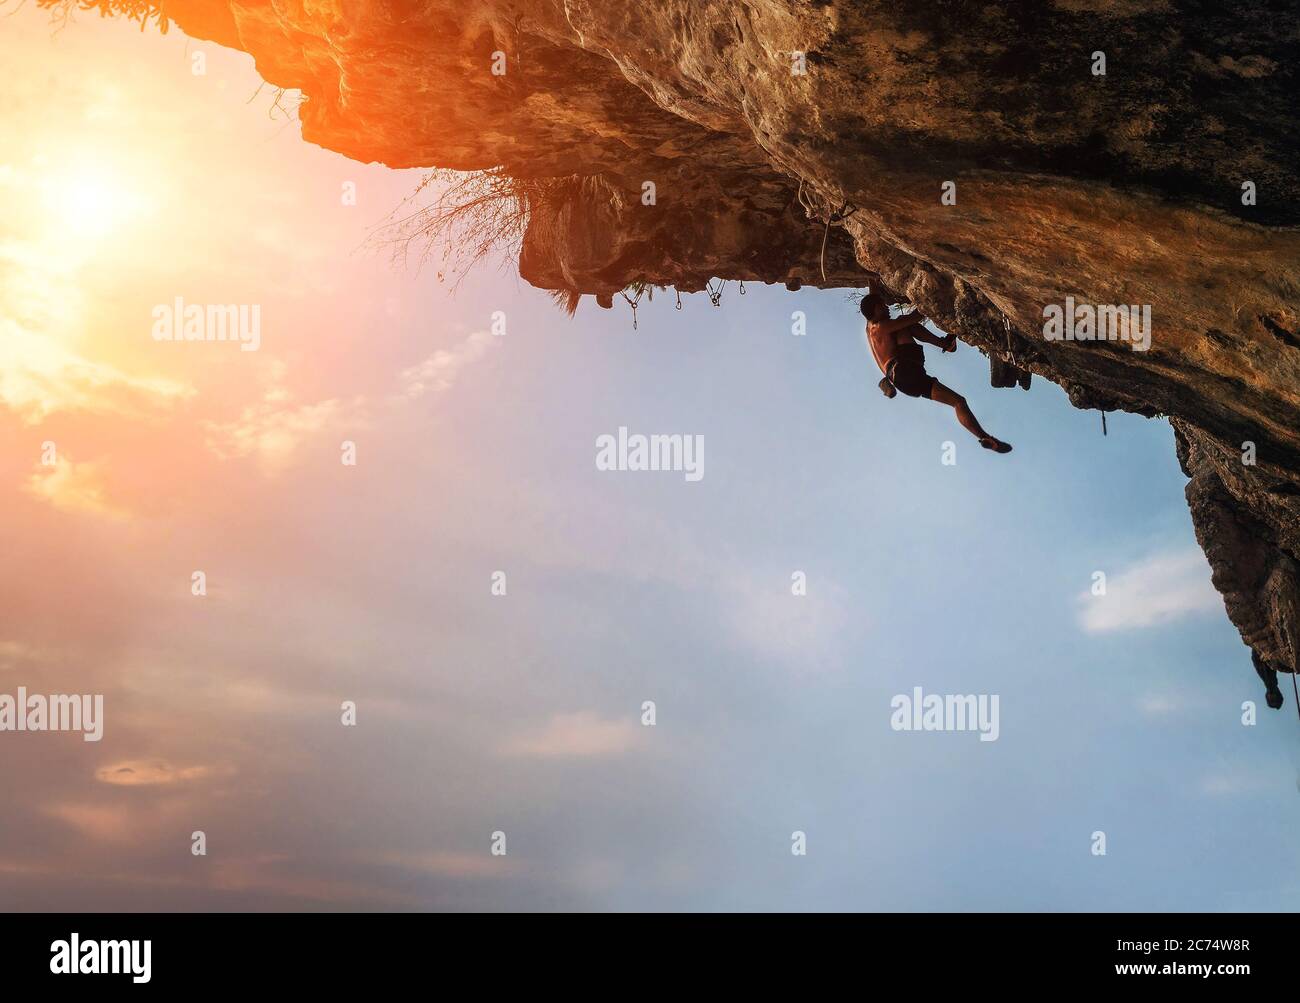 Athletic man Klettern auf überhängenden Felsen mit bunten Sonnenuntergang Himmel Hintergrund Stockfoto